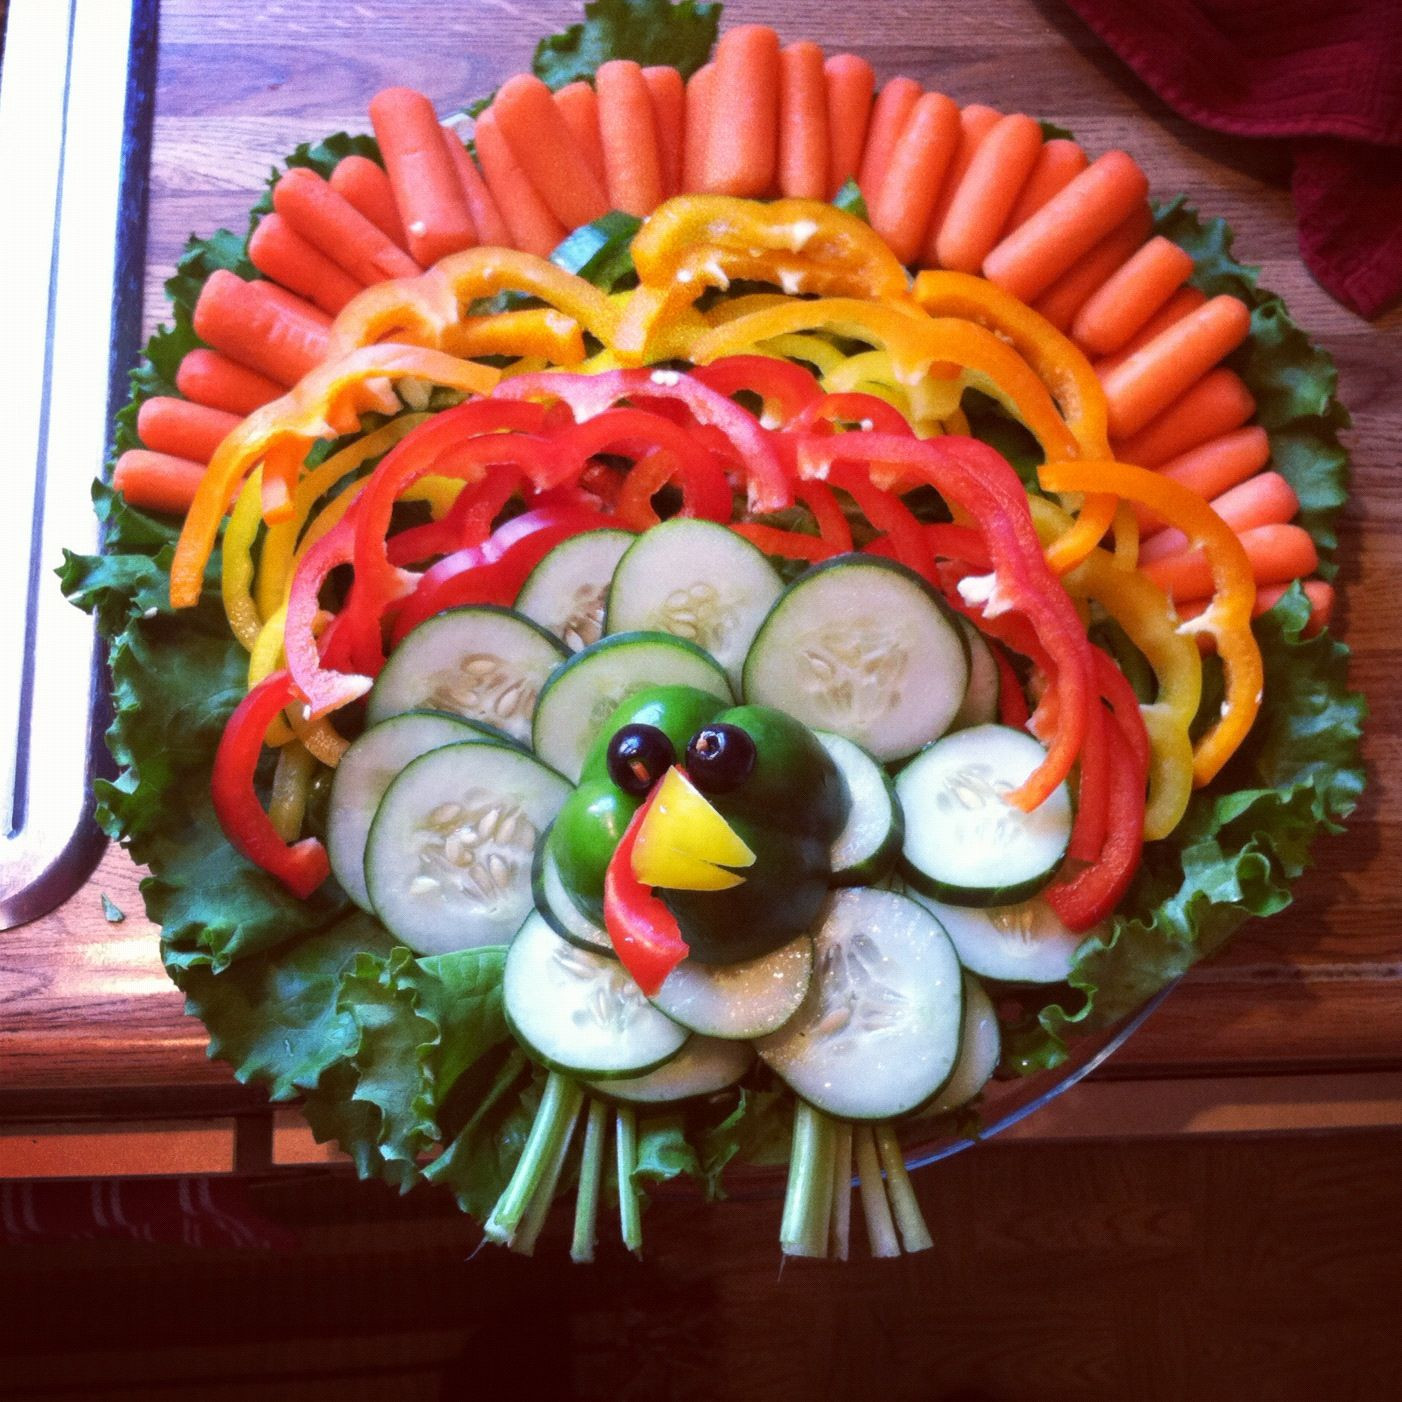 Turkey Veggie Platter For Thanksgiving
 1000 ideas about Turkey Veggie Platter on Pinterest